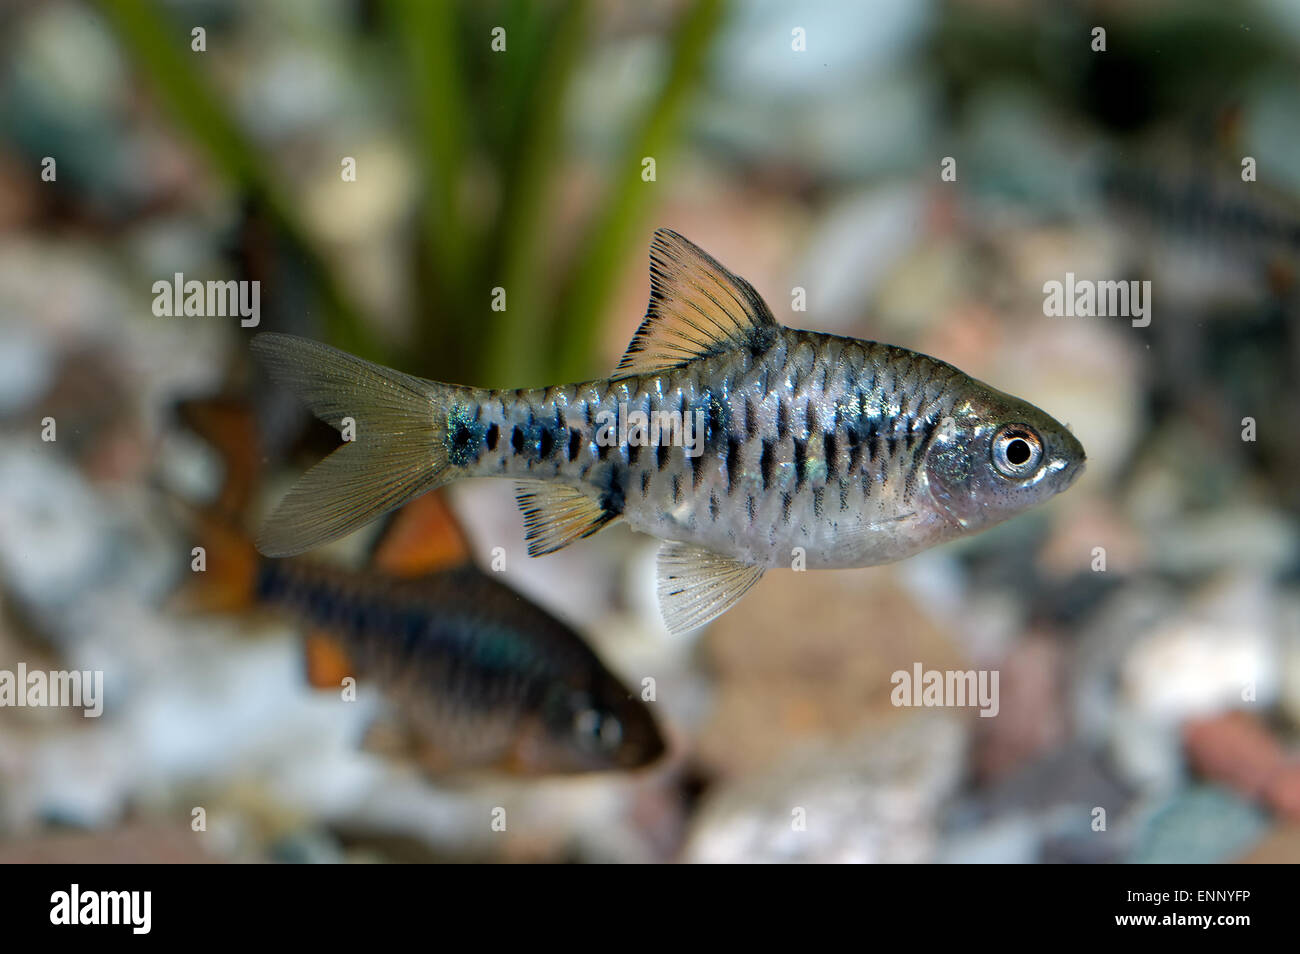 Aquarium fish from genus Puntius. Stock Photo